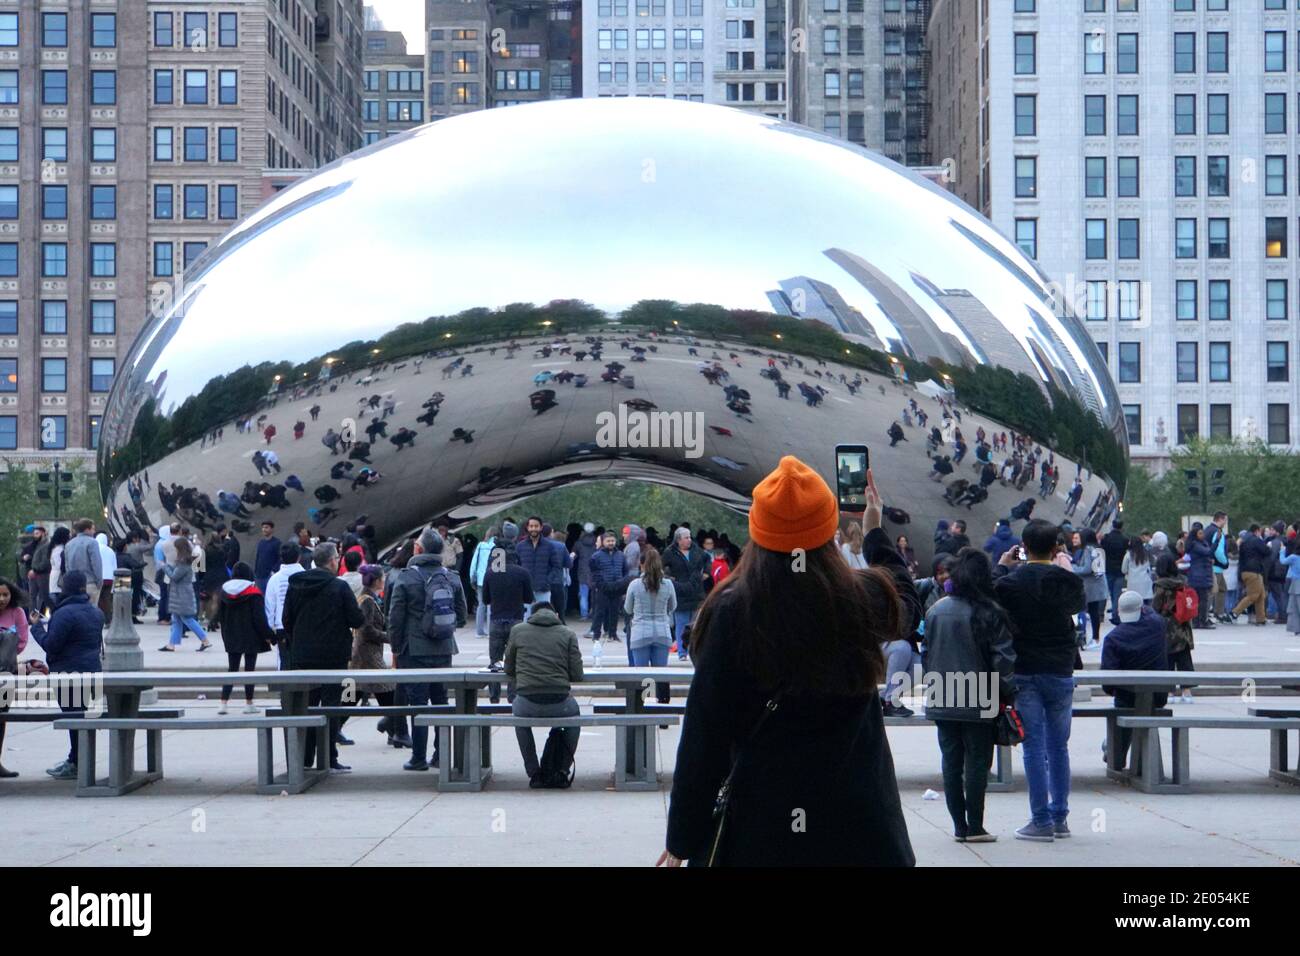 Chicago, Illinois, États-Unis - 13 octobre 2018 - UNE dame prenant une photo de Cloud Gate, également connu sous le nom de « The Bean », un lieu touristique populaire à Millennium Pa Banque D'Images